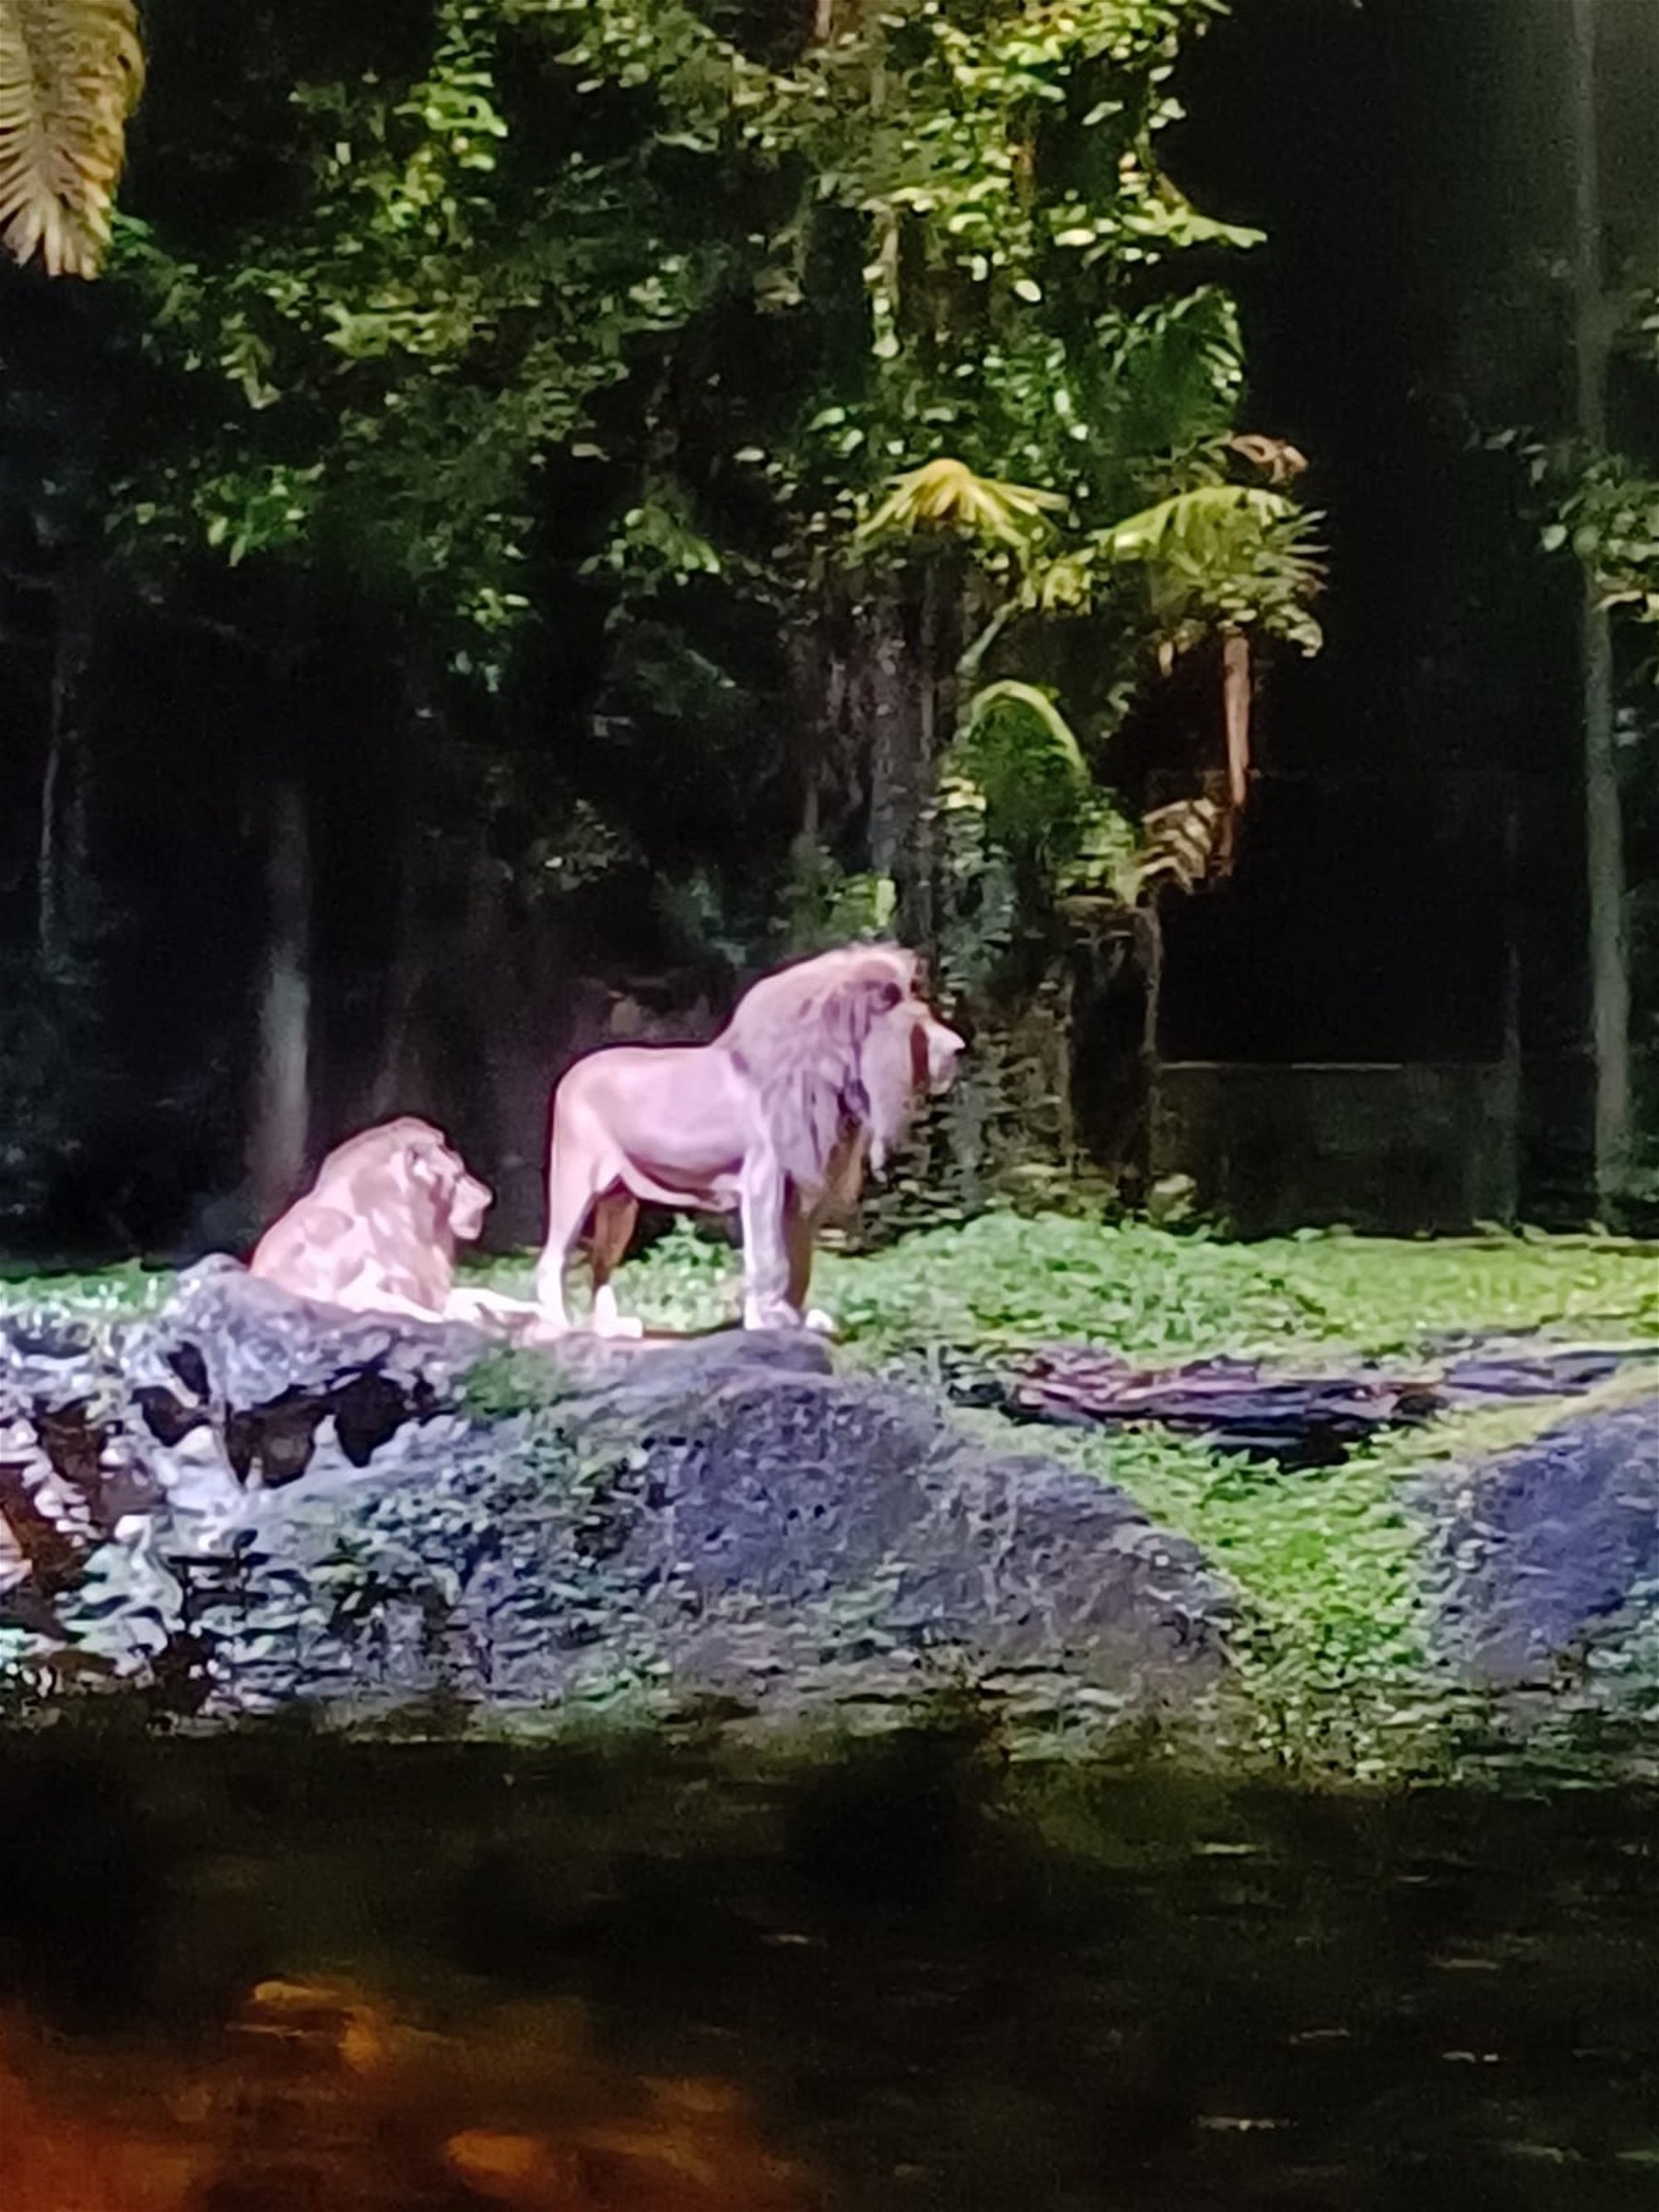 Night Safari - An amazing experience!